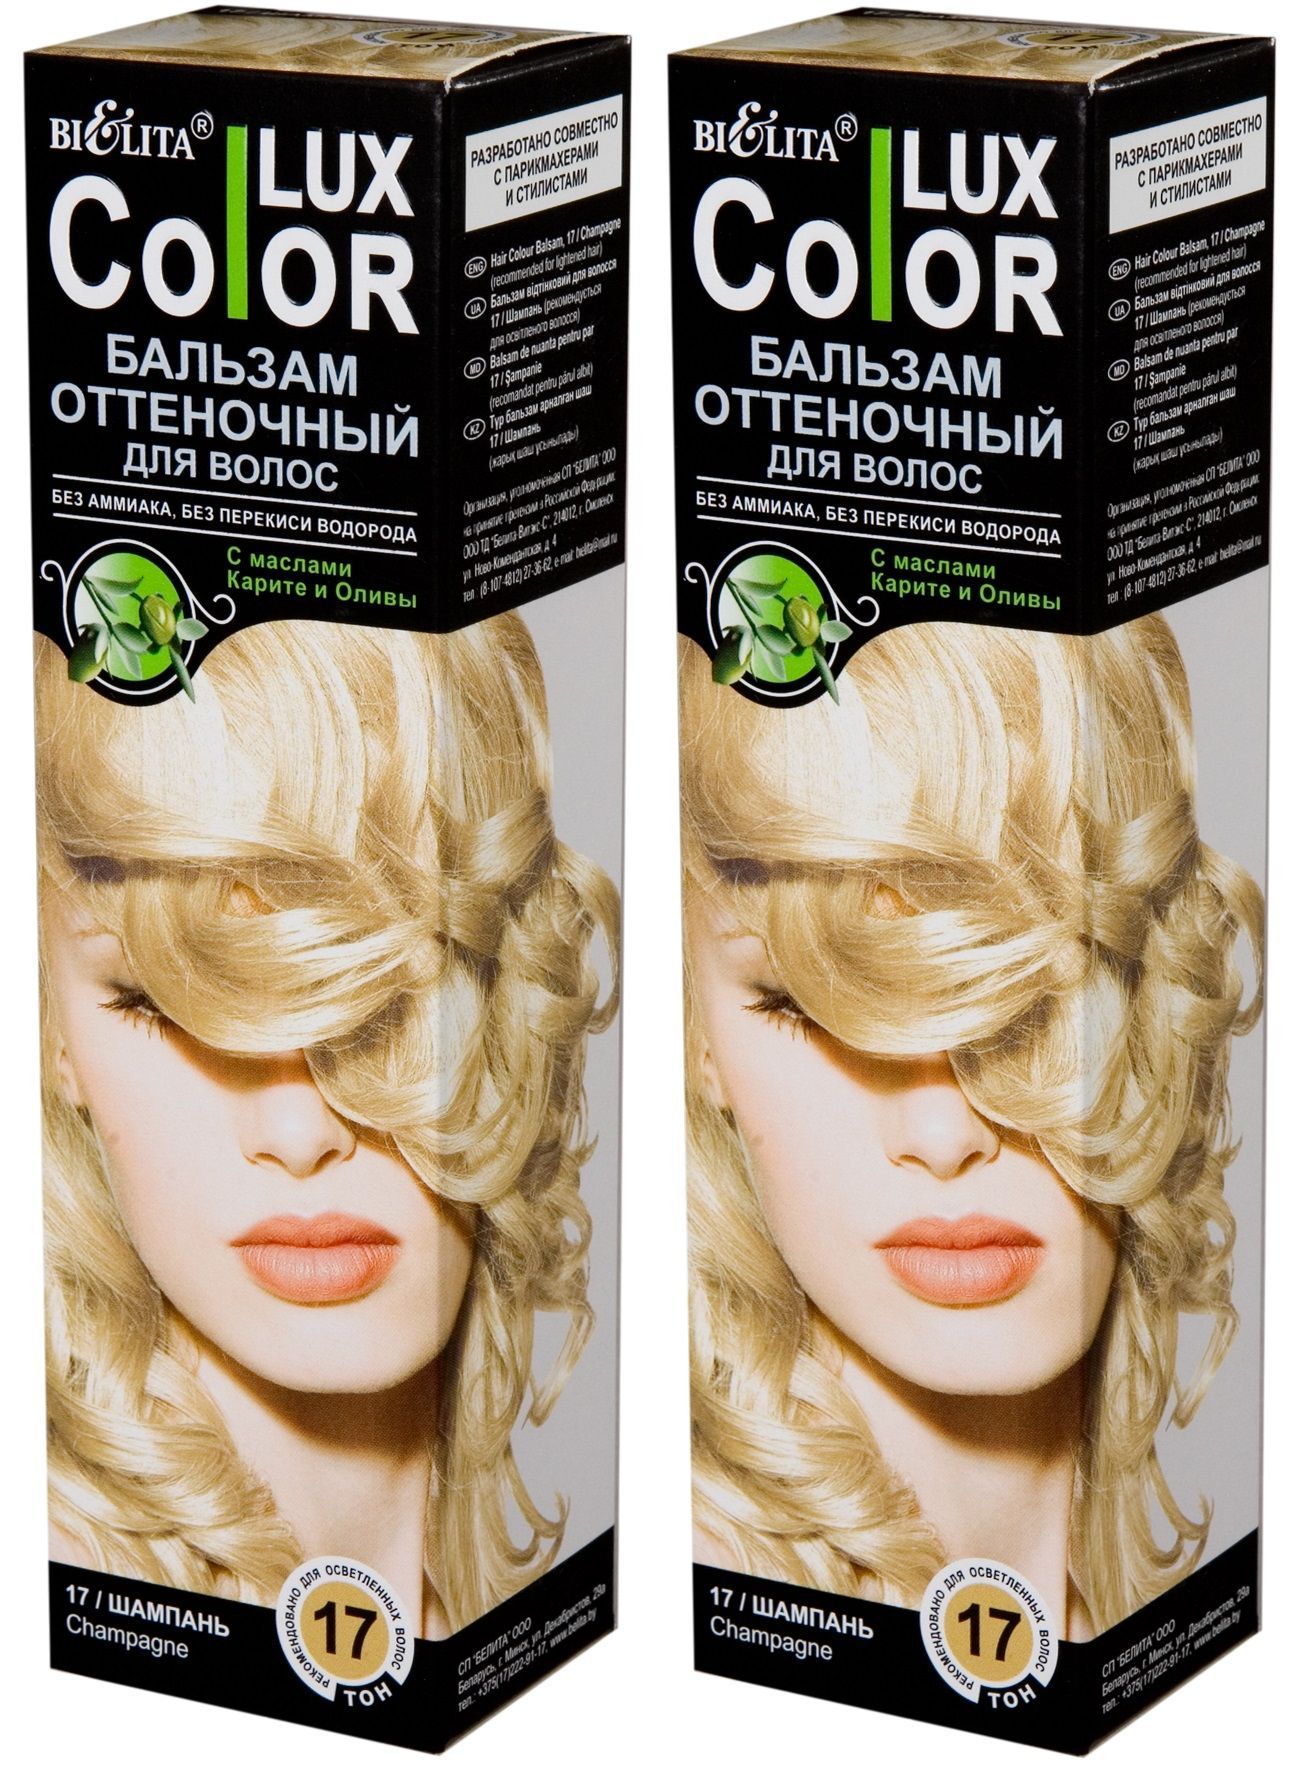 Белита Оттеночный Бальзам для волос «COLOR LUX» тон 16 Жемчужно-розовый 100мл